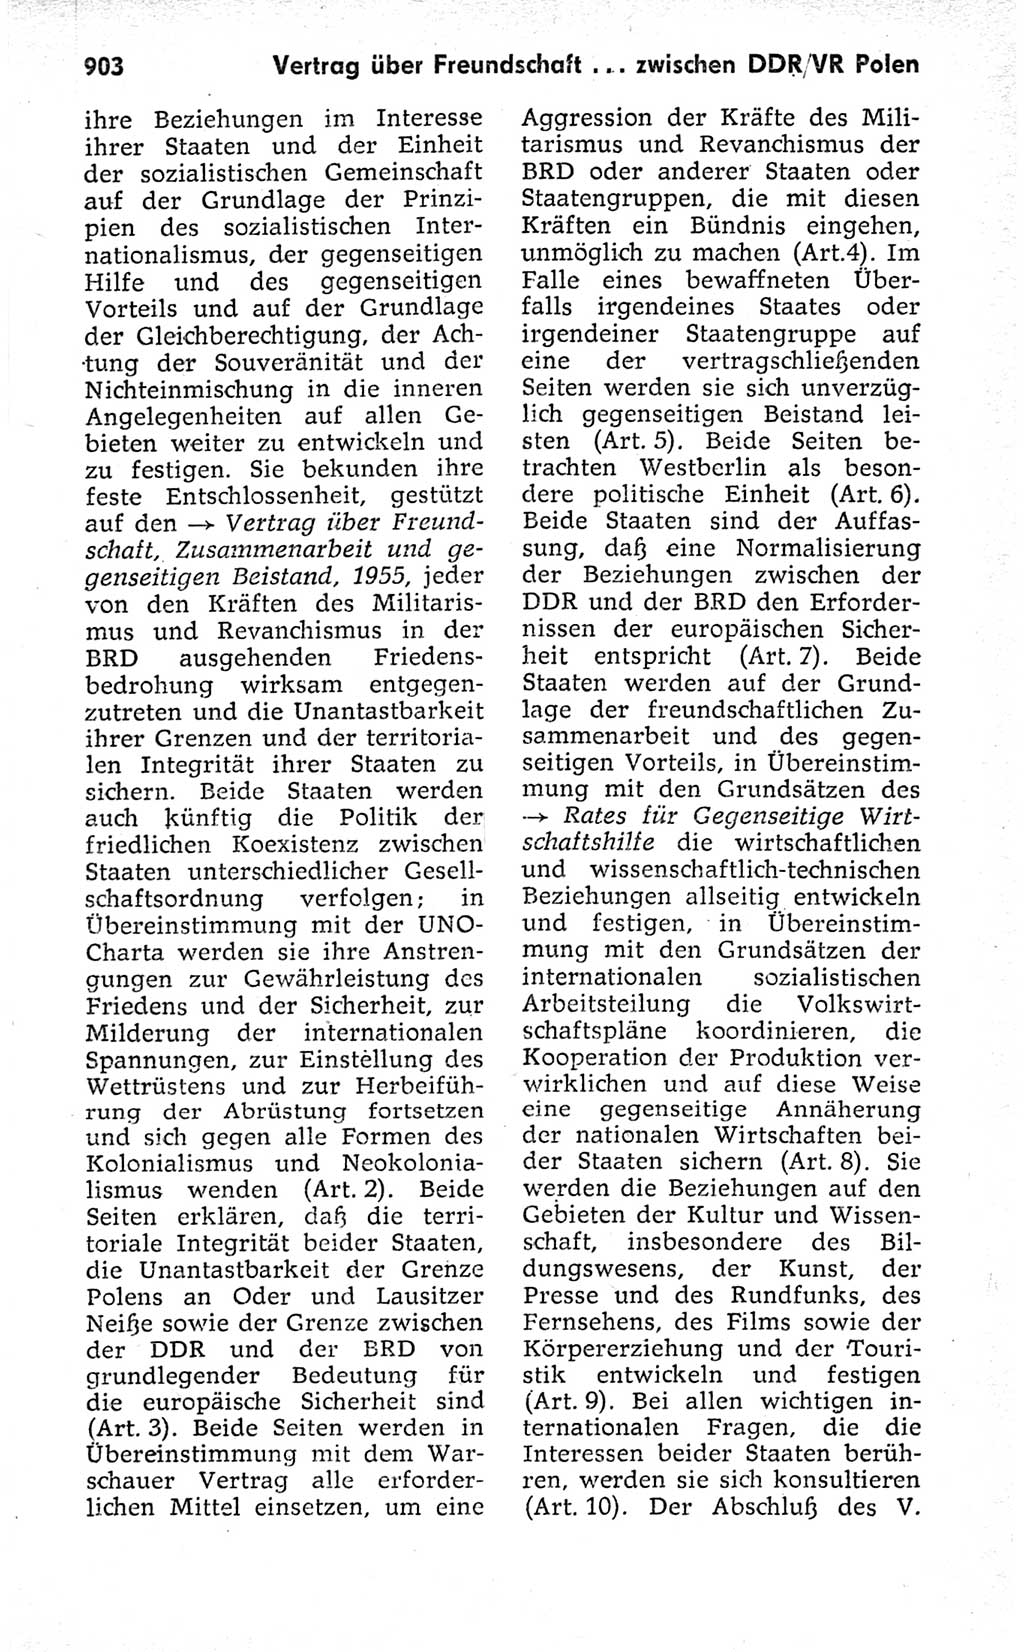 Kleines politisches Wörterbuch [Deutsche Demokratische Republik (DDR)] 1973, Seite 903 (Kl. pol. Wb. DDR 1973, S. 903)